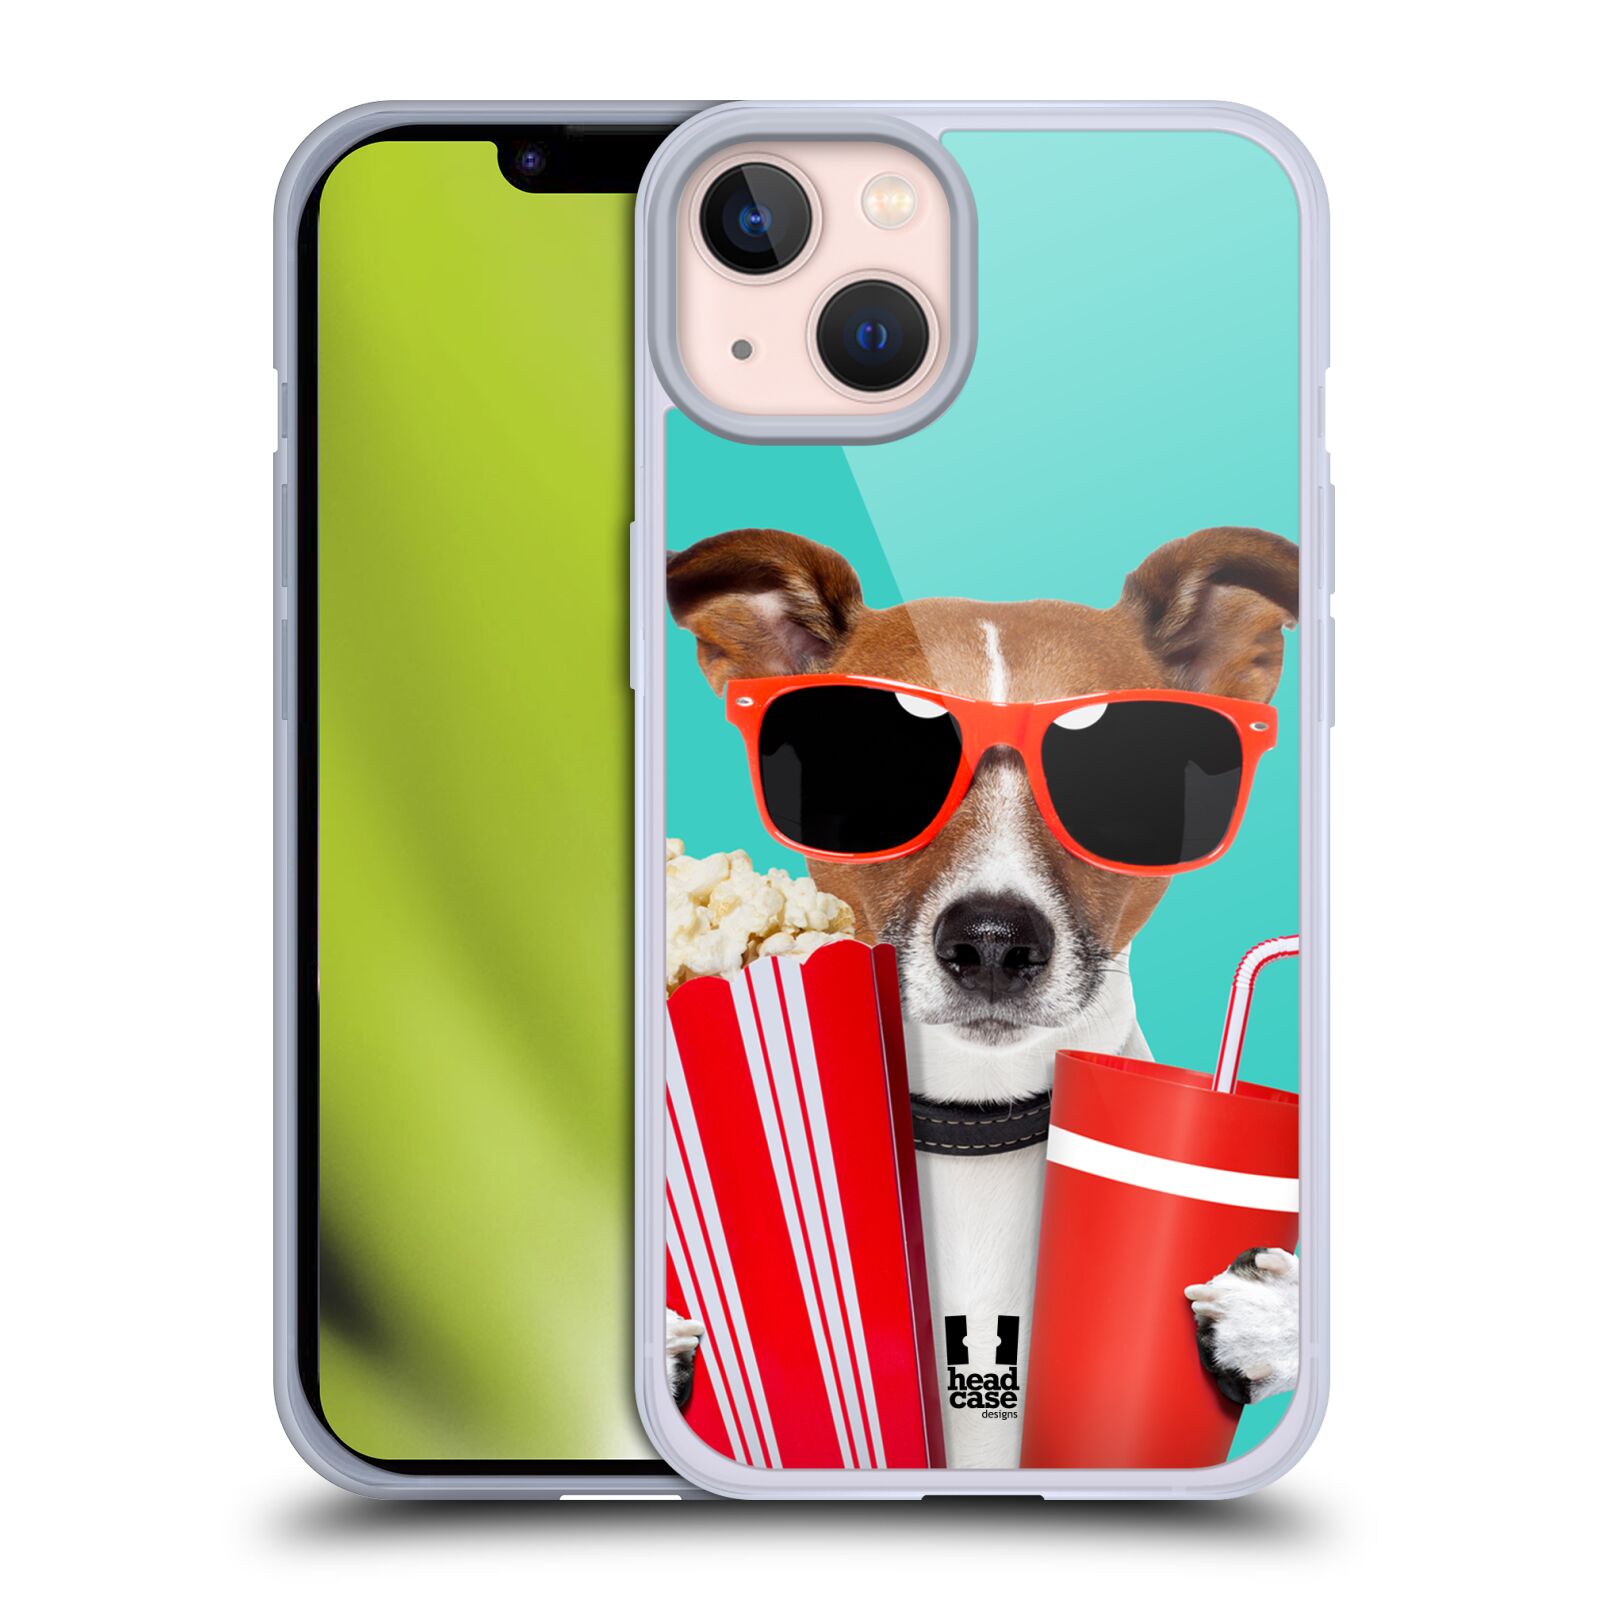 Plastový obal HEAD CASE na mobil Apple Iphone 13 vzor Legrační zvířátka pejsek v kině s popkornem